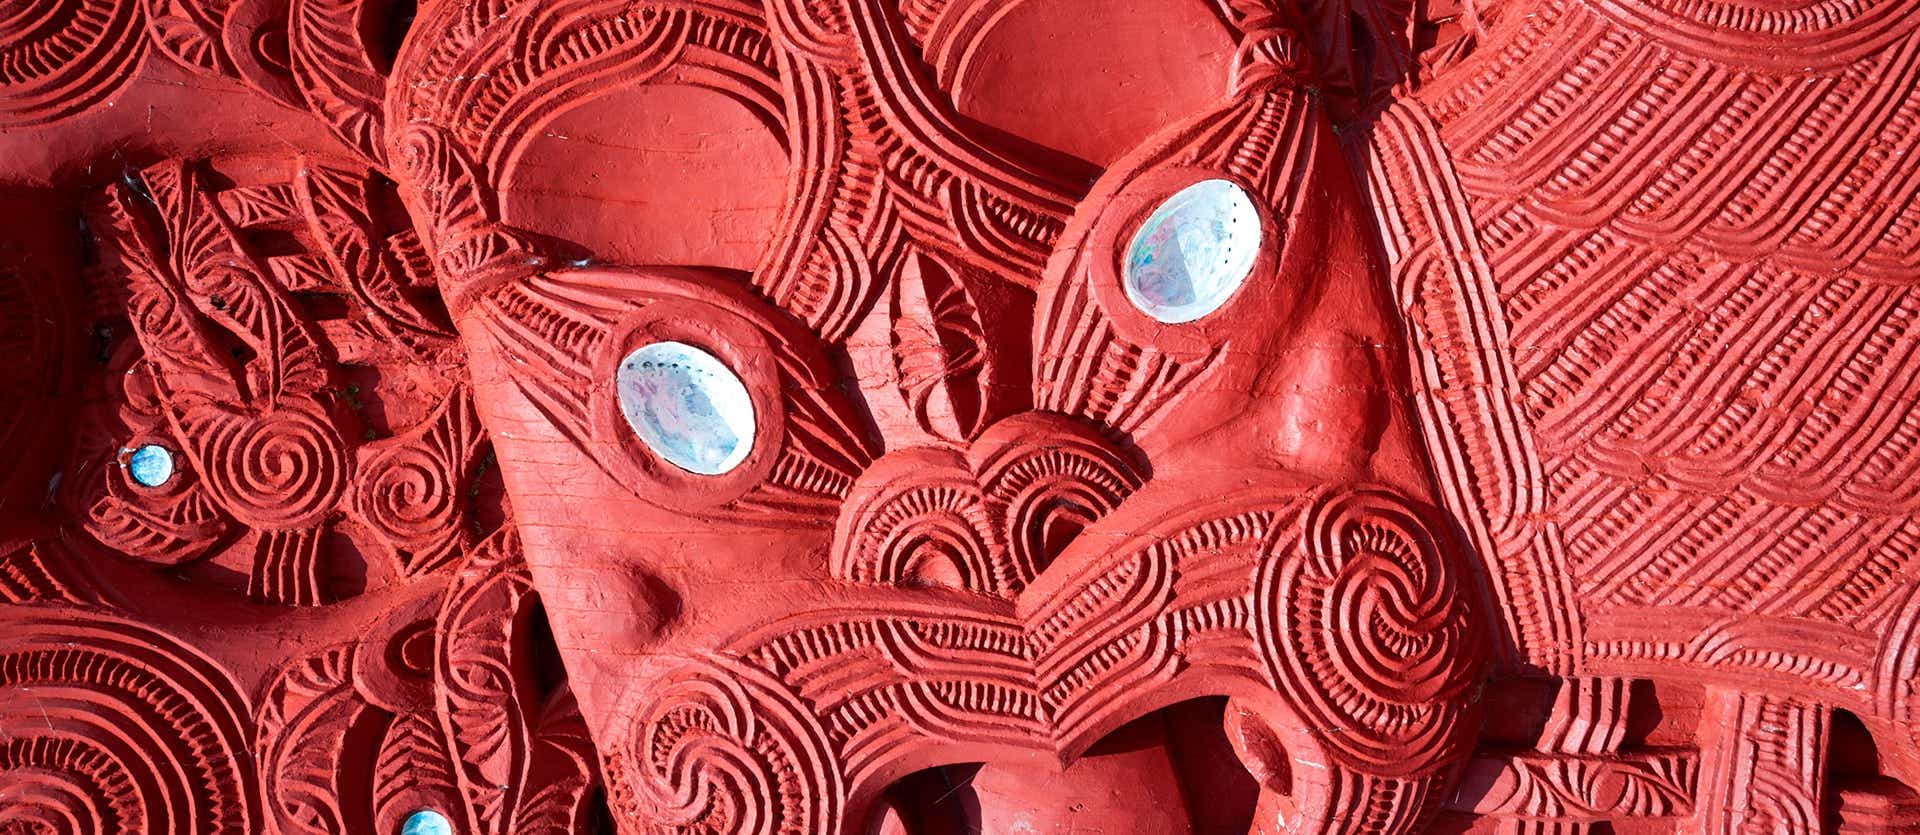 Maori Carvings <span class="iconos separador"></span> Rotorua